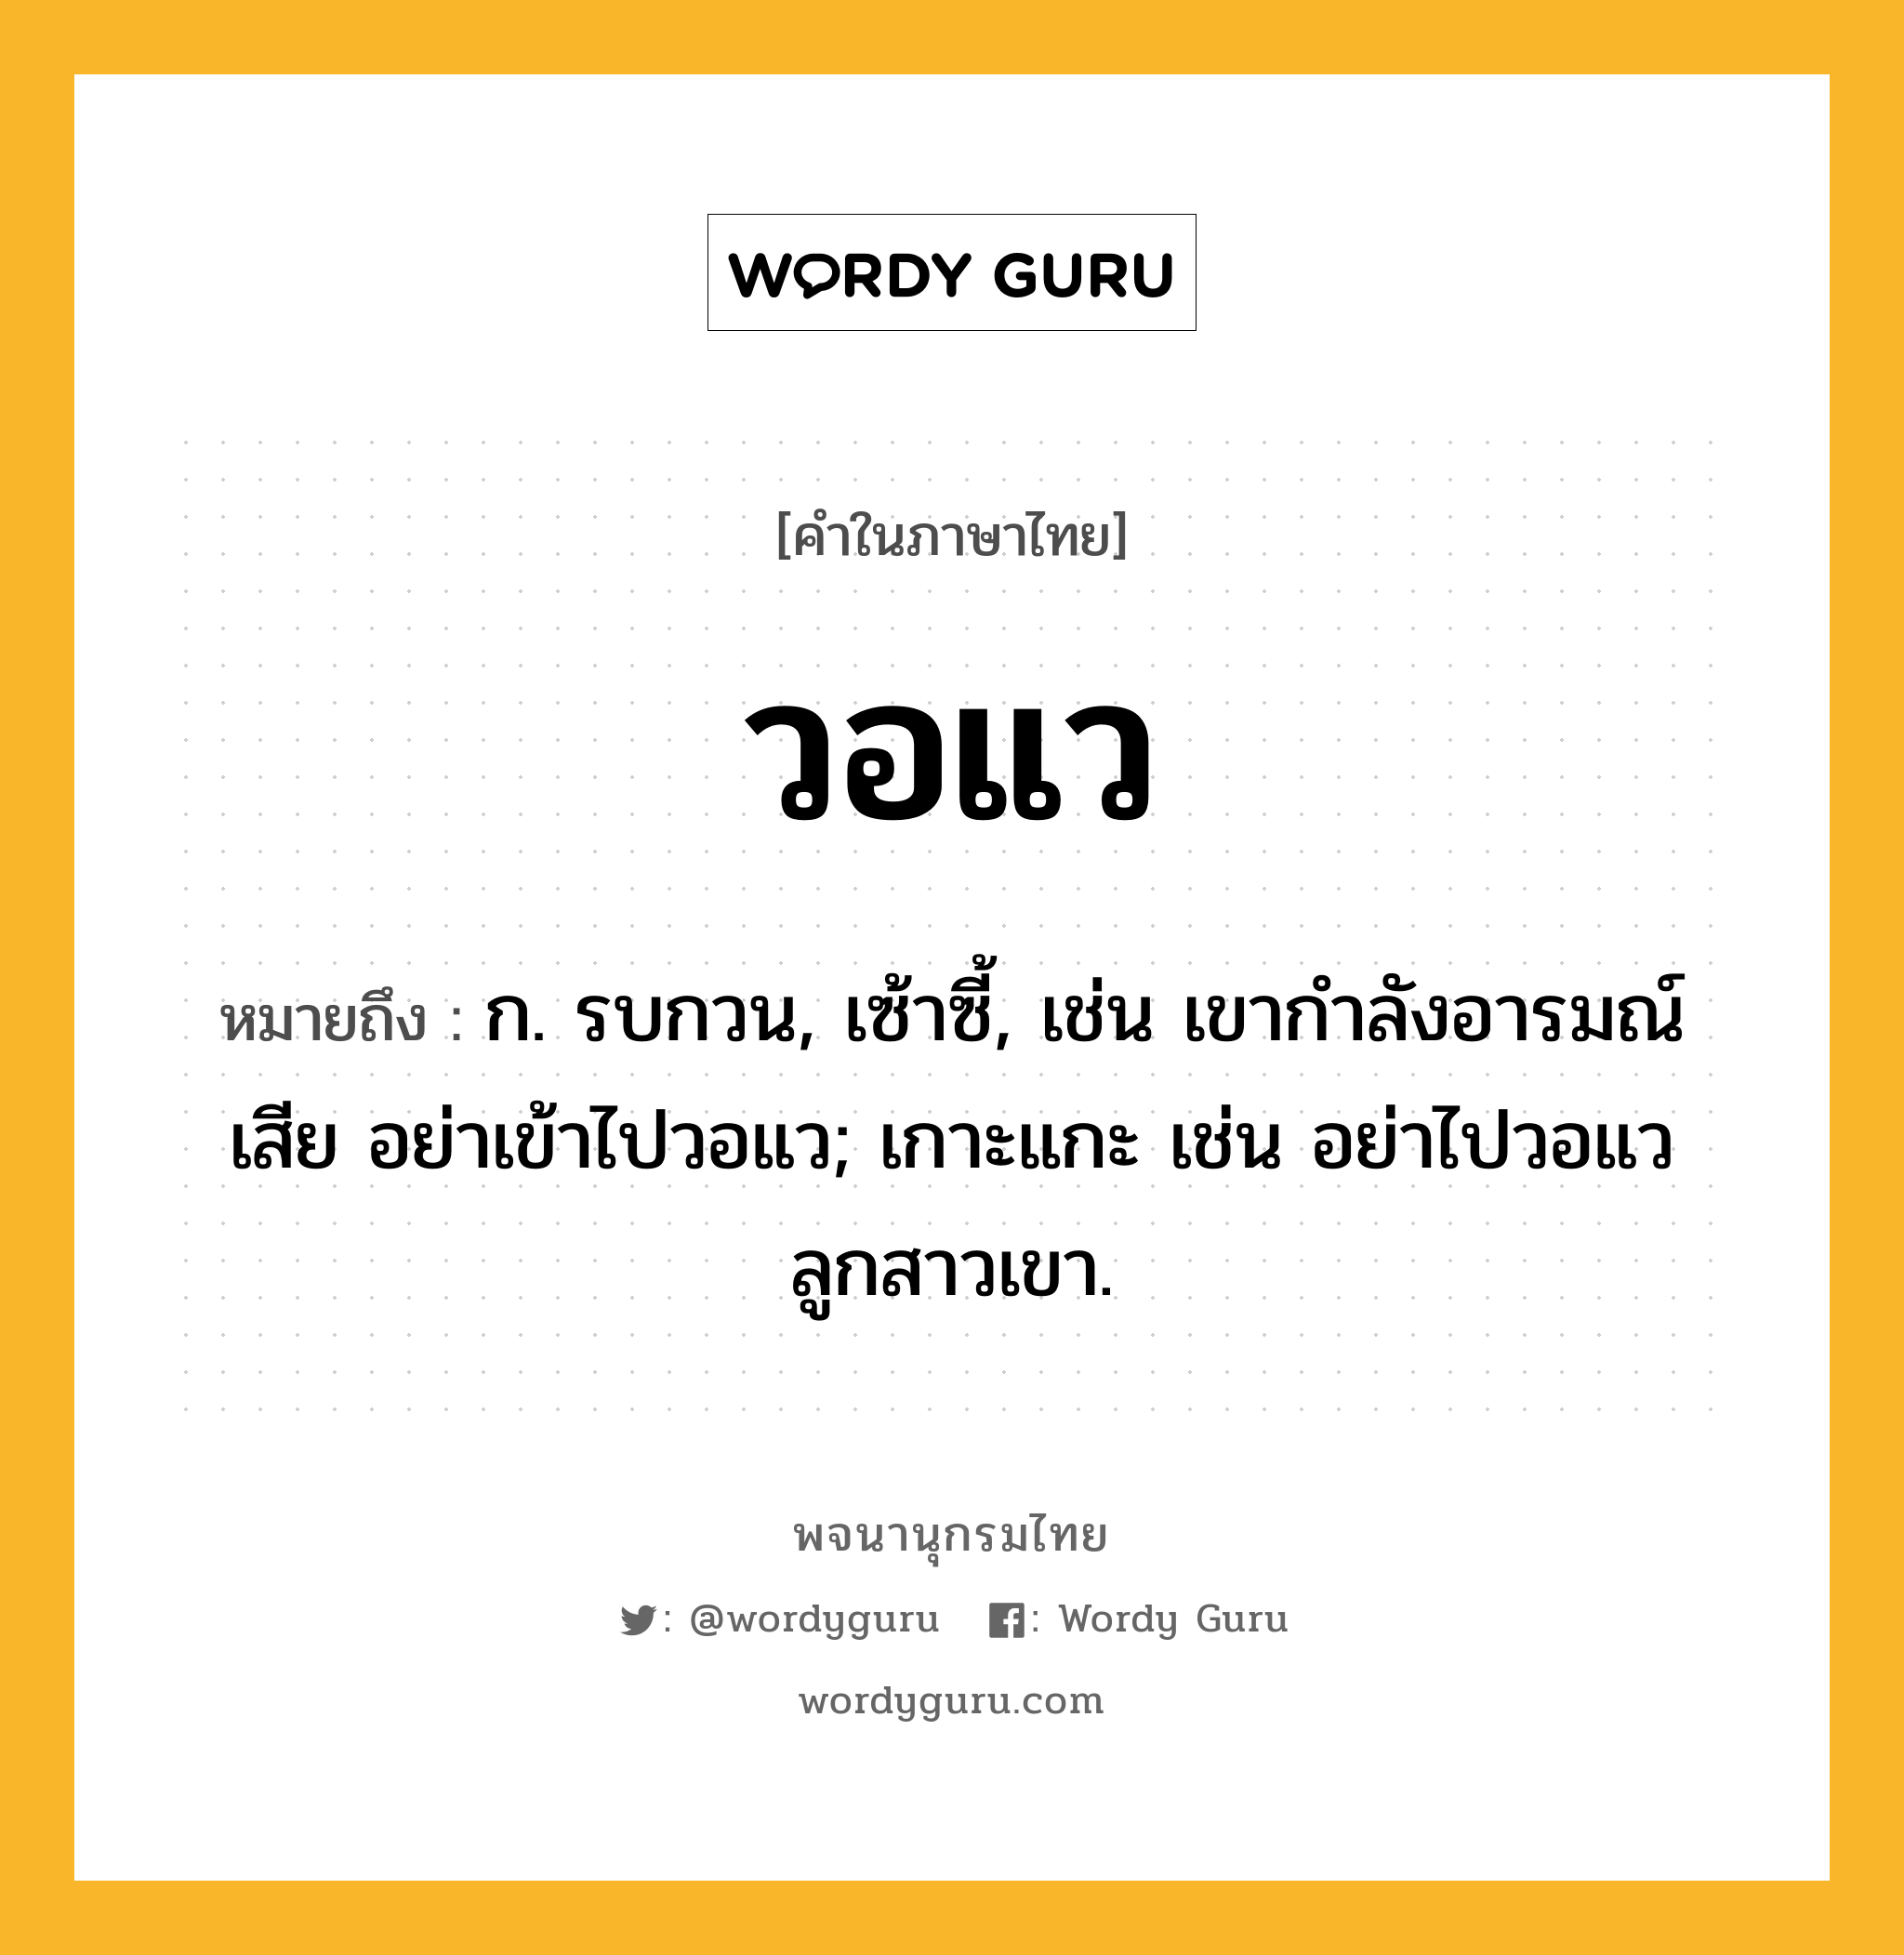 วอแว หมายถึงอะไร?, คำในภาษาไทย วอแว หมายถึง ก. รบกวน, เซ้าซี้, เช่น เขากำลังอารมณ์เสีย อย่าเข้าไปวอแว; เกาะแกะ เช่น อย่าไปวอแวลูกสาวเขา.